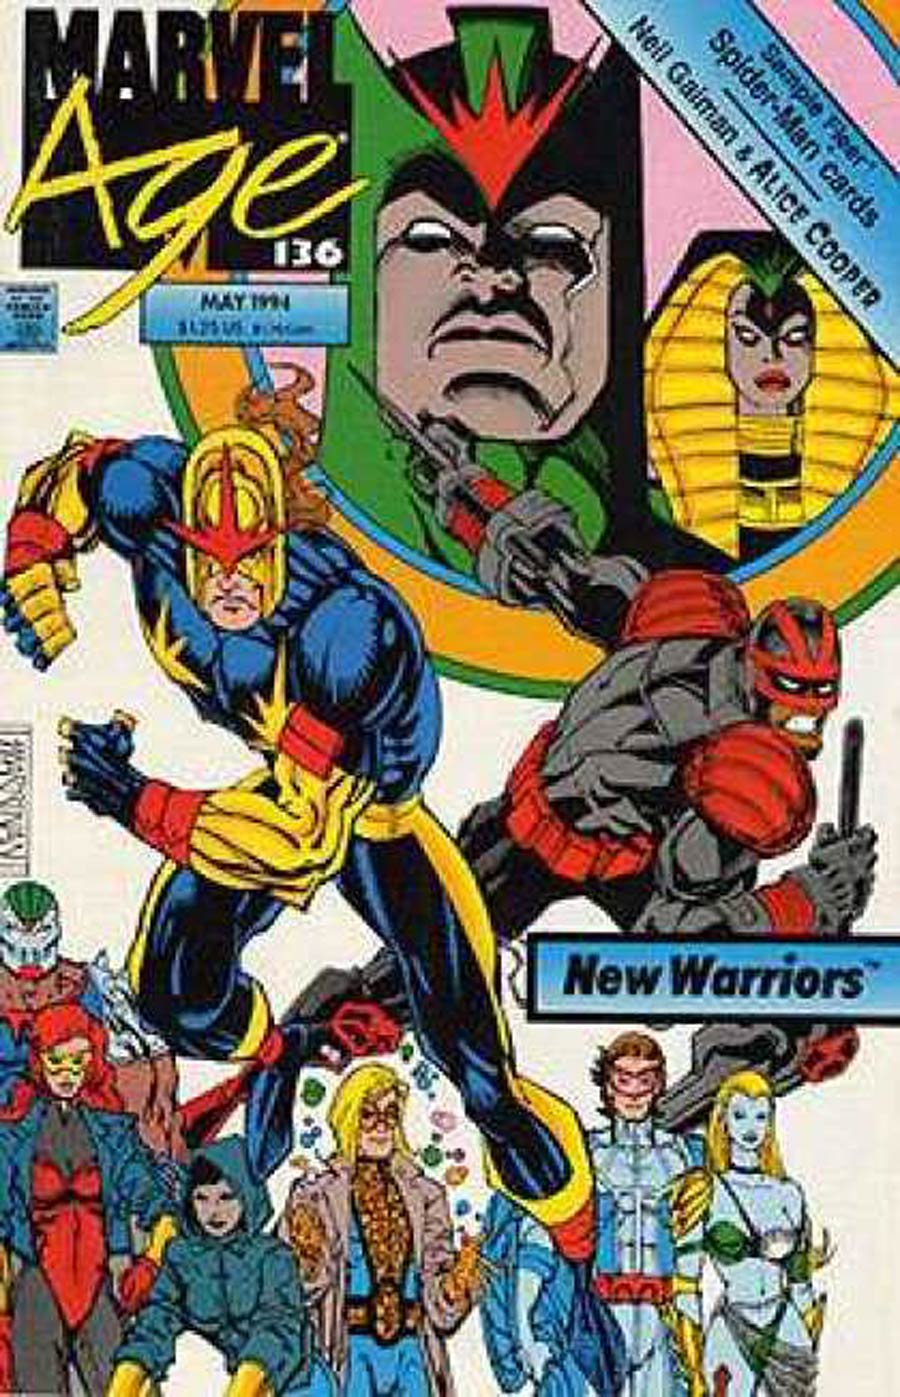 Marvel Age #136